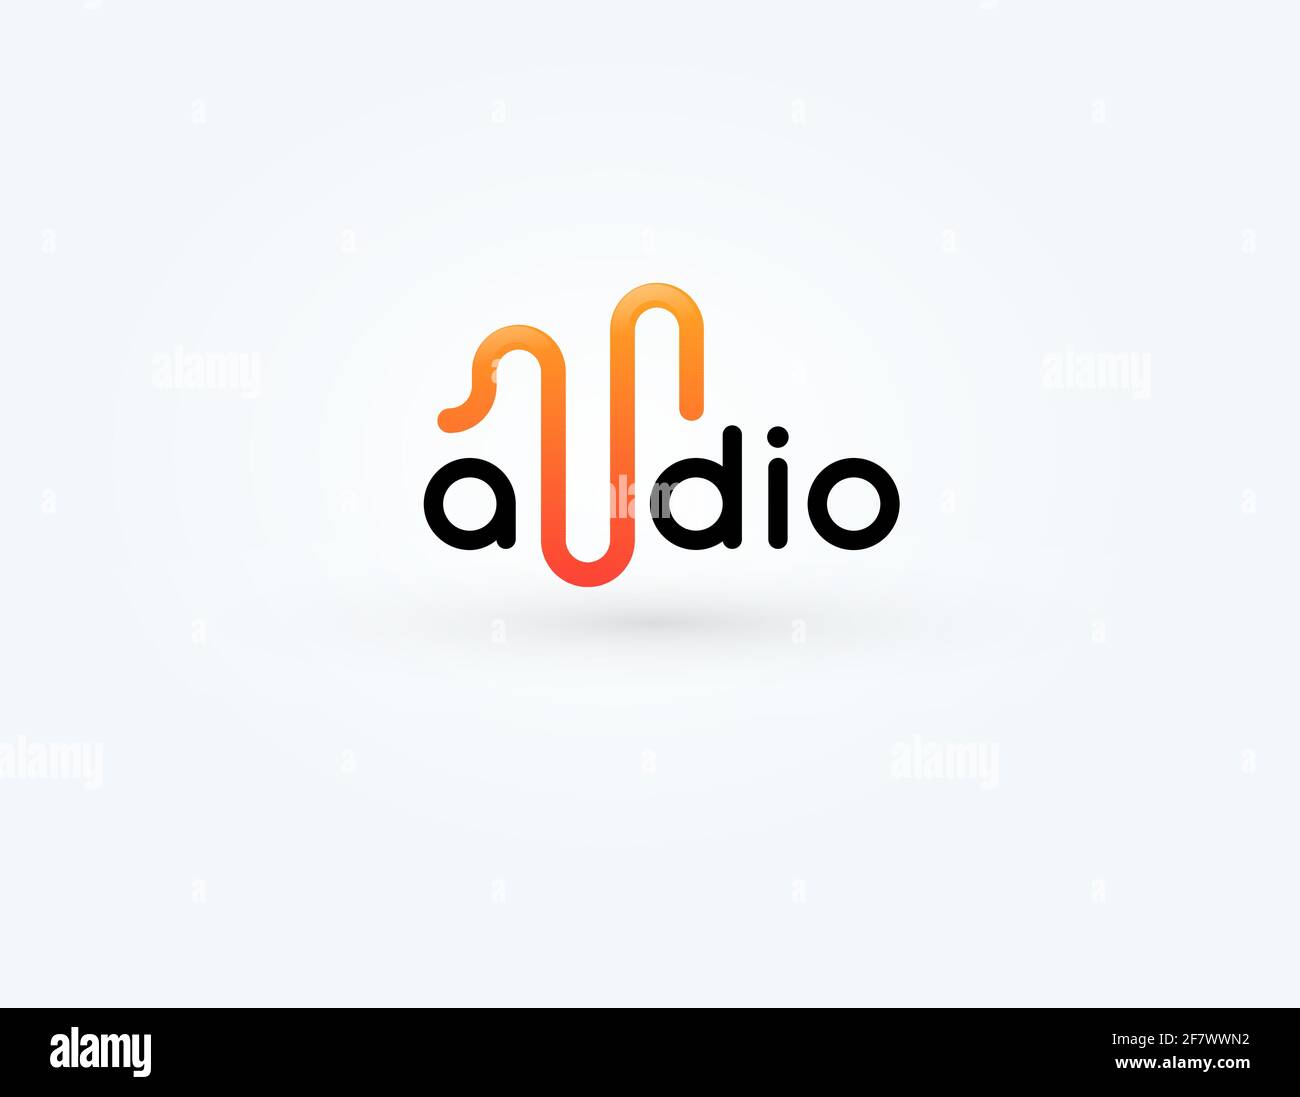 Icona Musica, logotipo di onde radio, simbolo di onde sonore. Design con logo Sound Impulse per registrazione audio e voce, design del marchio del negozio di musica, audio Illustrazione Vettoriale